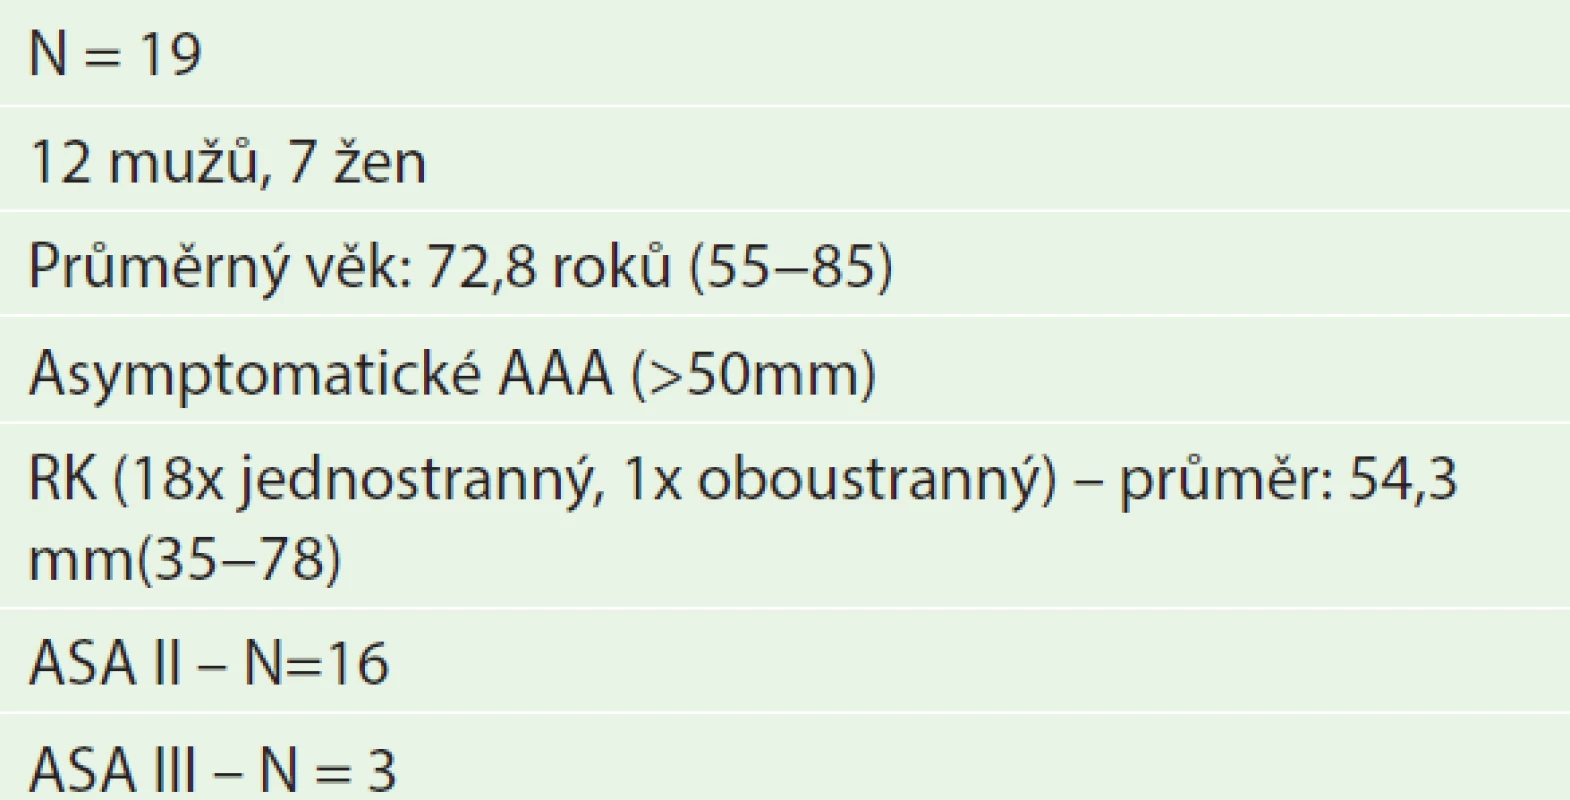 Soubor nemocných s aneuryzmatem břišní aorty a renálním karcinomem (5/1994−5/2014)
Tab. 1: Group of patients with AAA and renal carcinoma (5/1994– 5/2014)